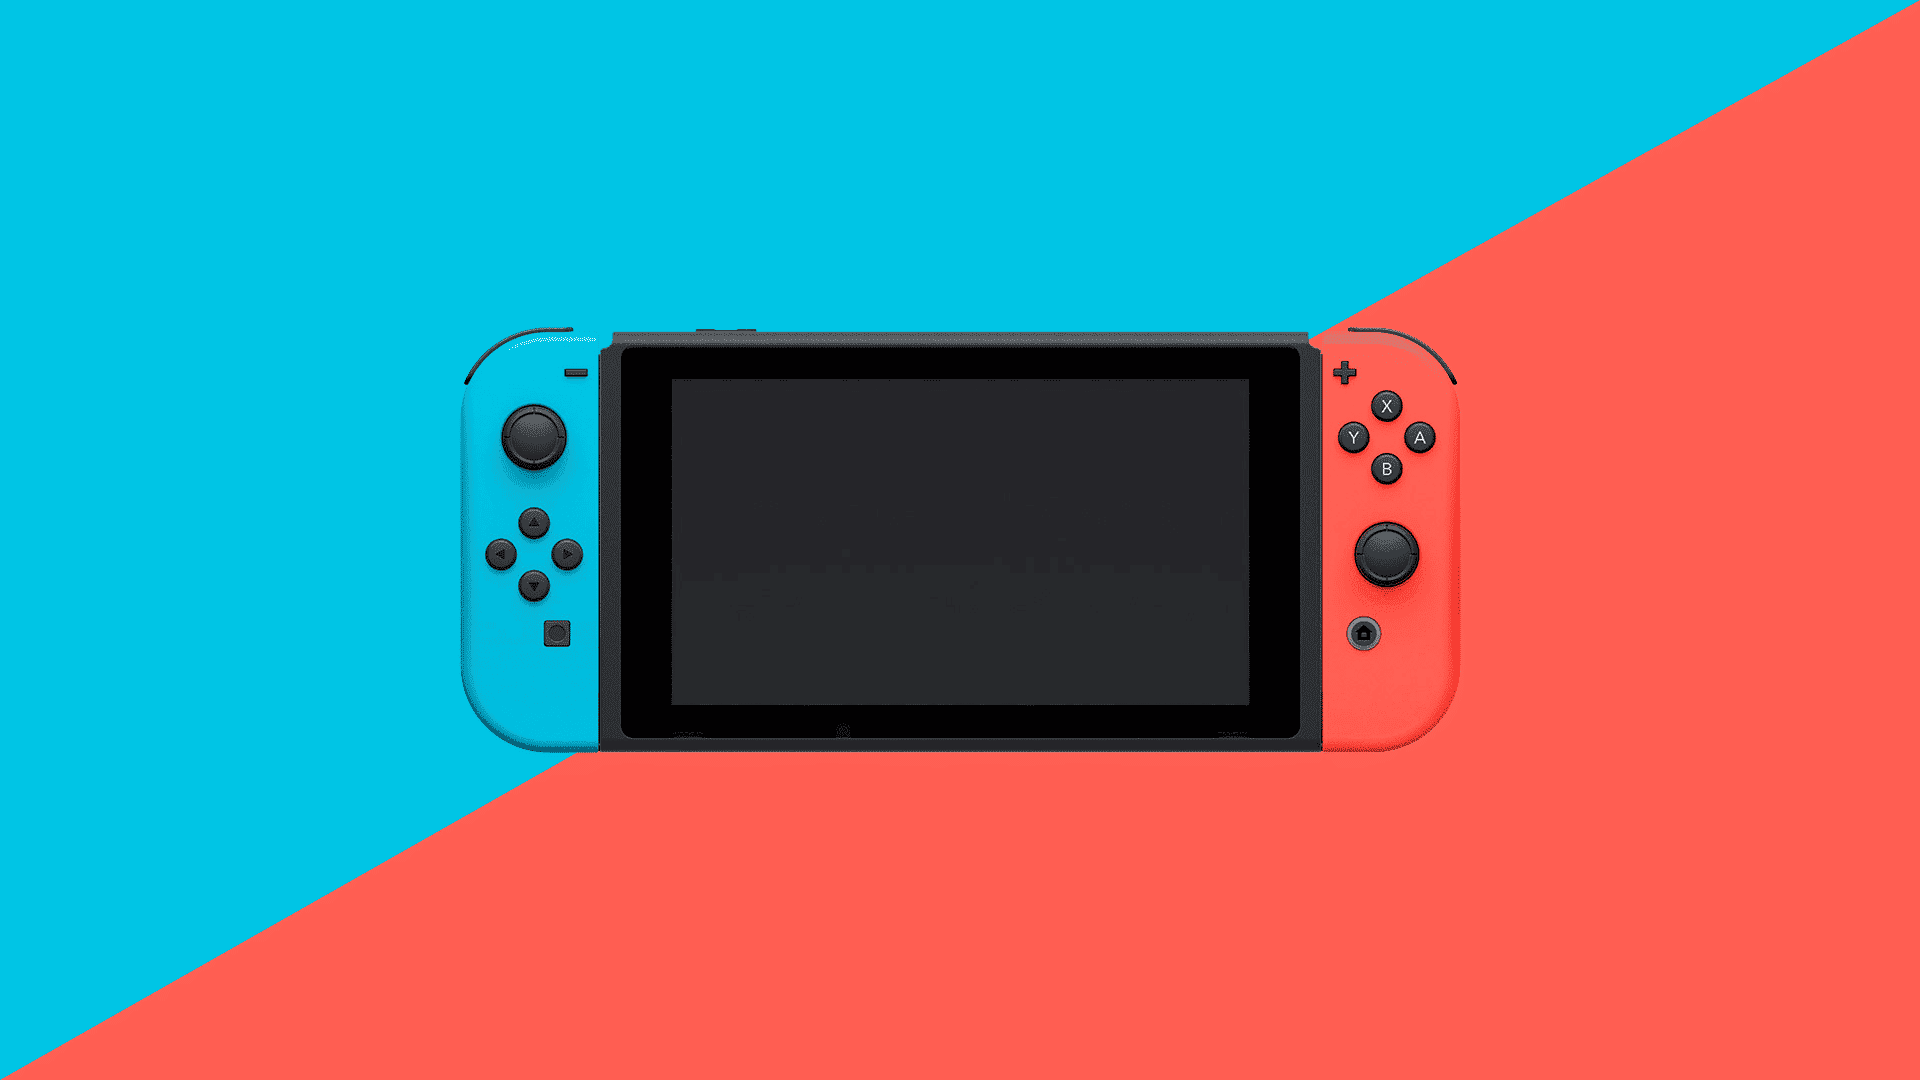 Resultados financieros del segundo trimestre fiscal de Nintendo: Switch ya ha vendido 22 millones de unidades